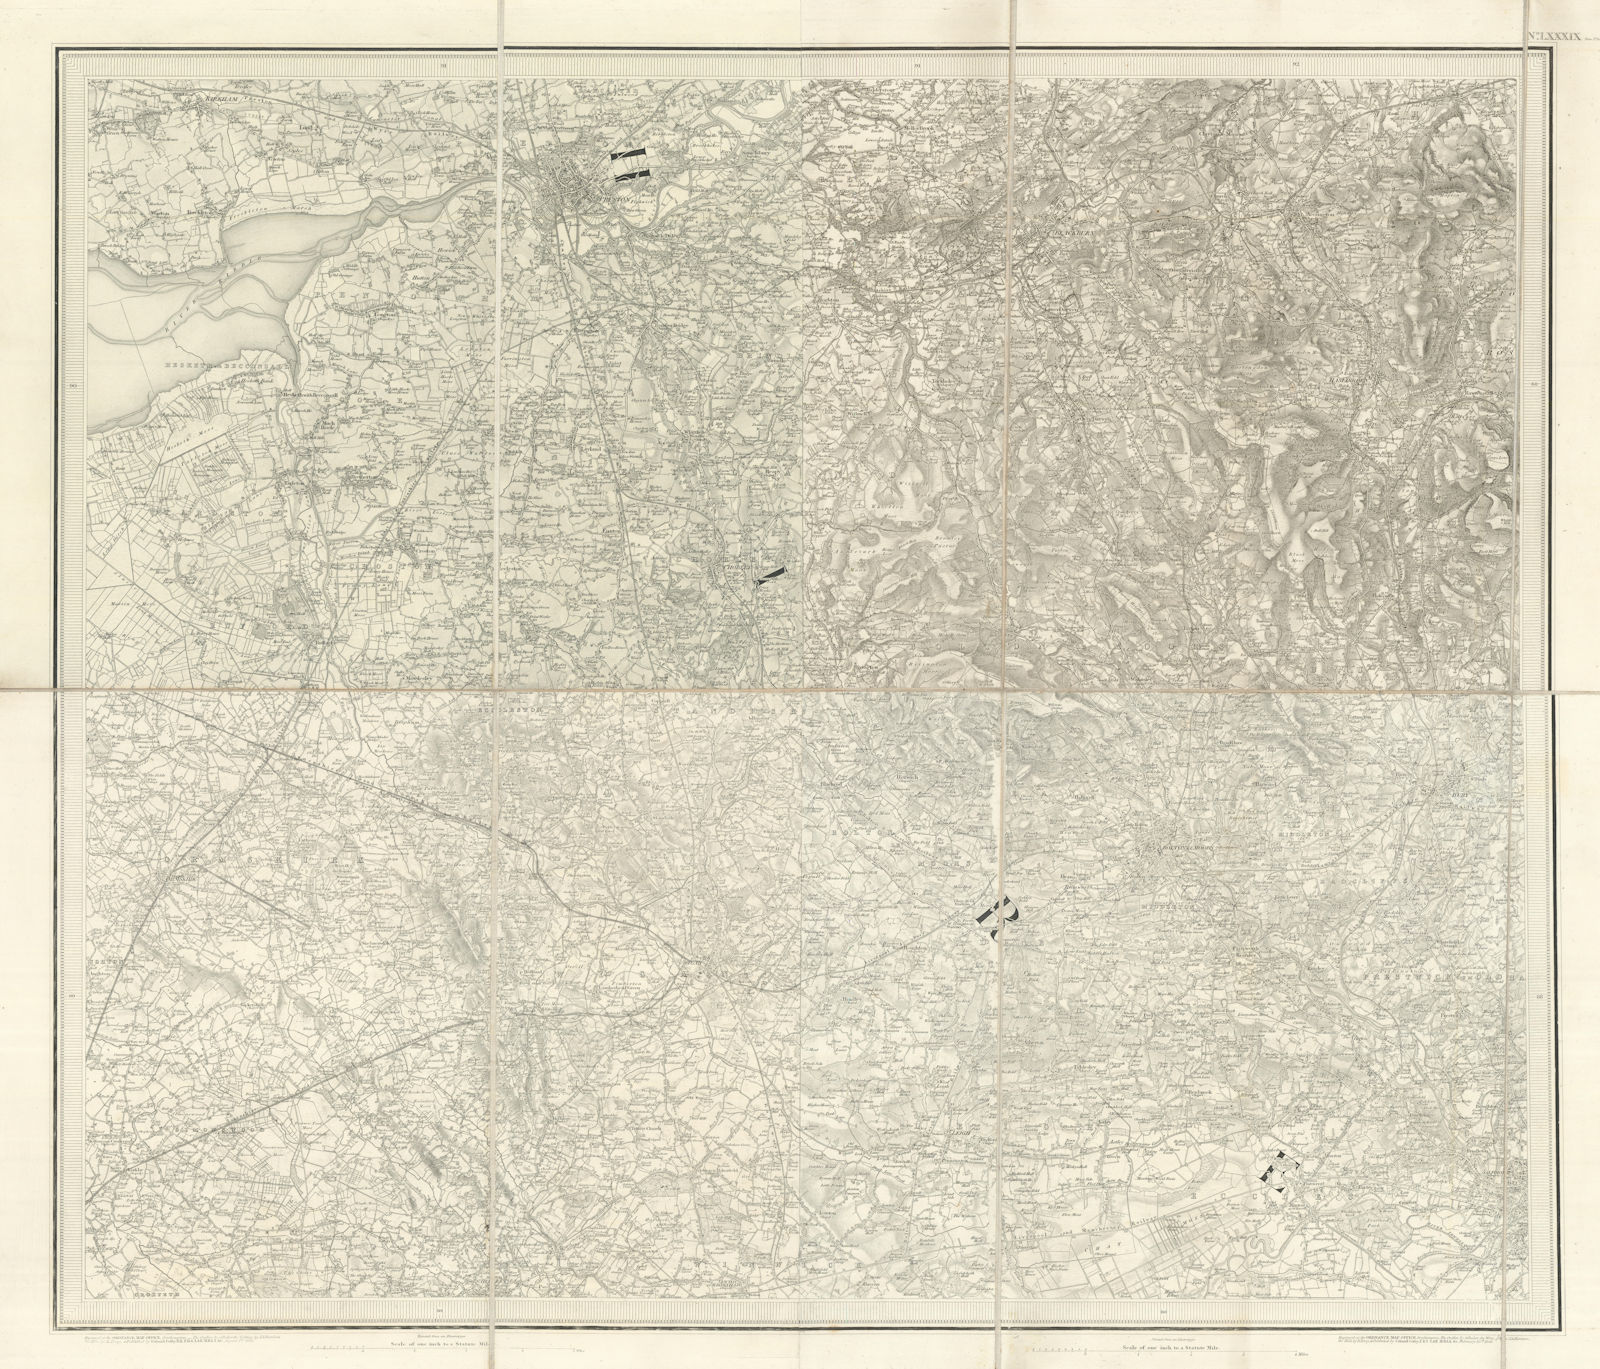 OS #89 Lancashire Plain & Valleys. Preston Blackburn Wigan Bolton Bury 1843 map